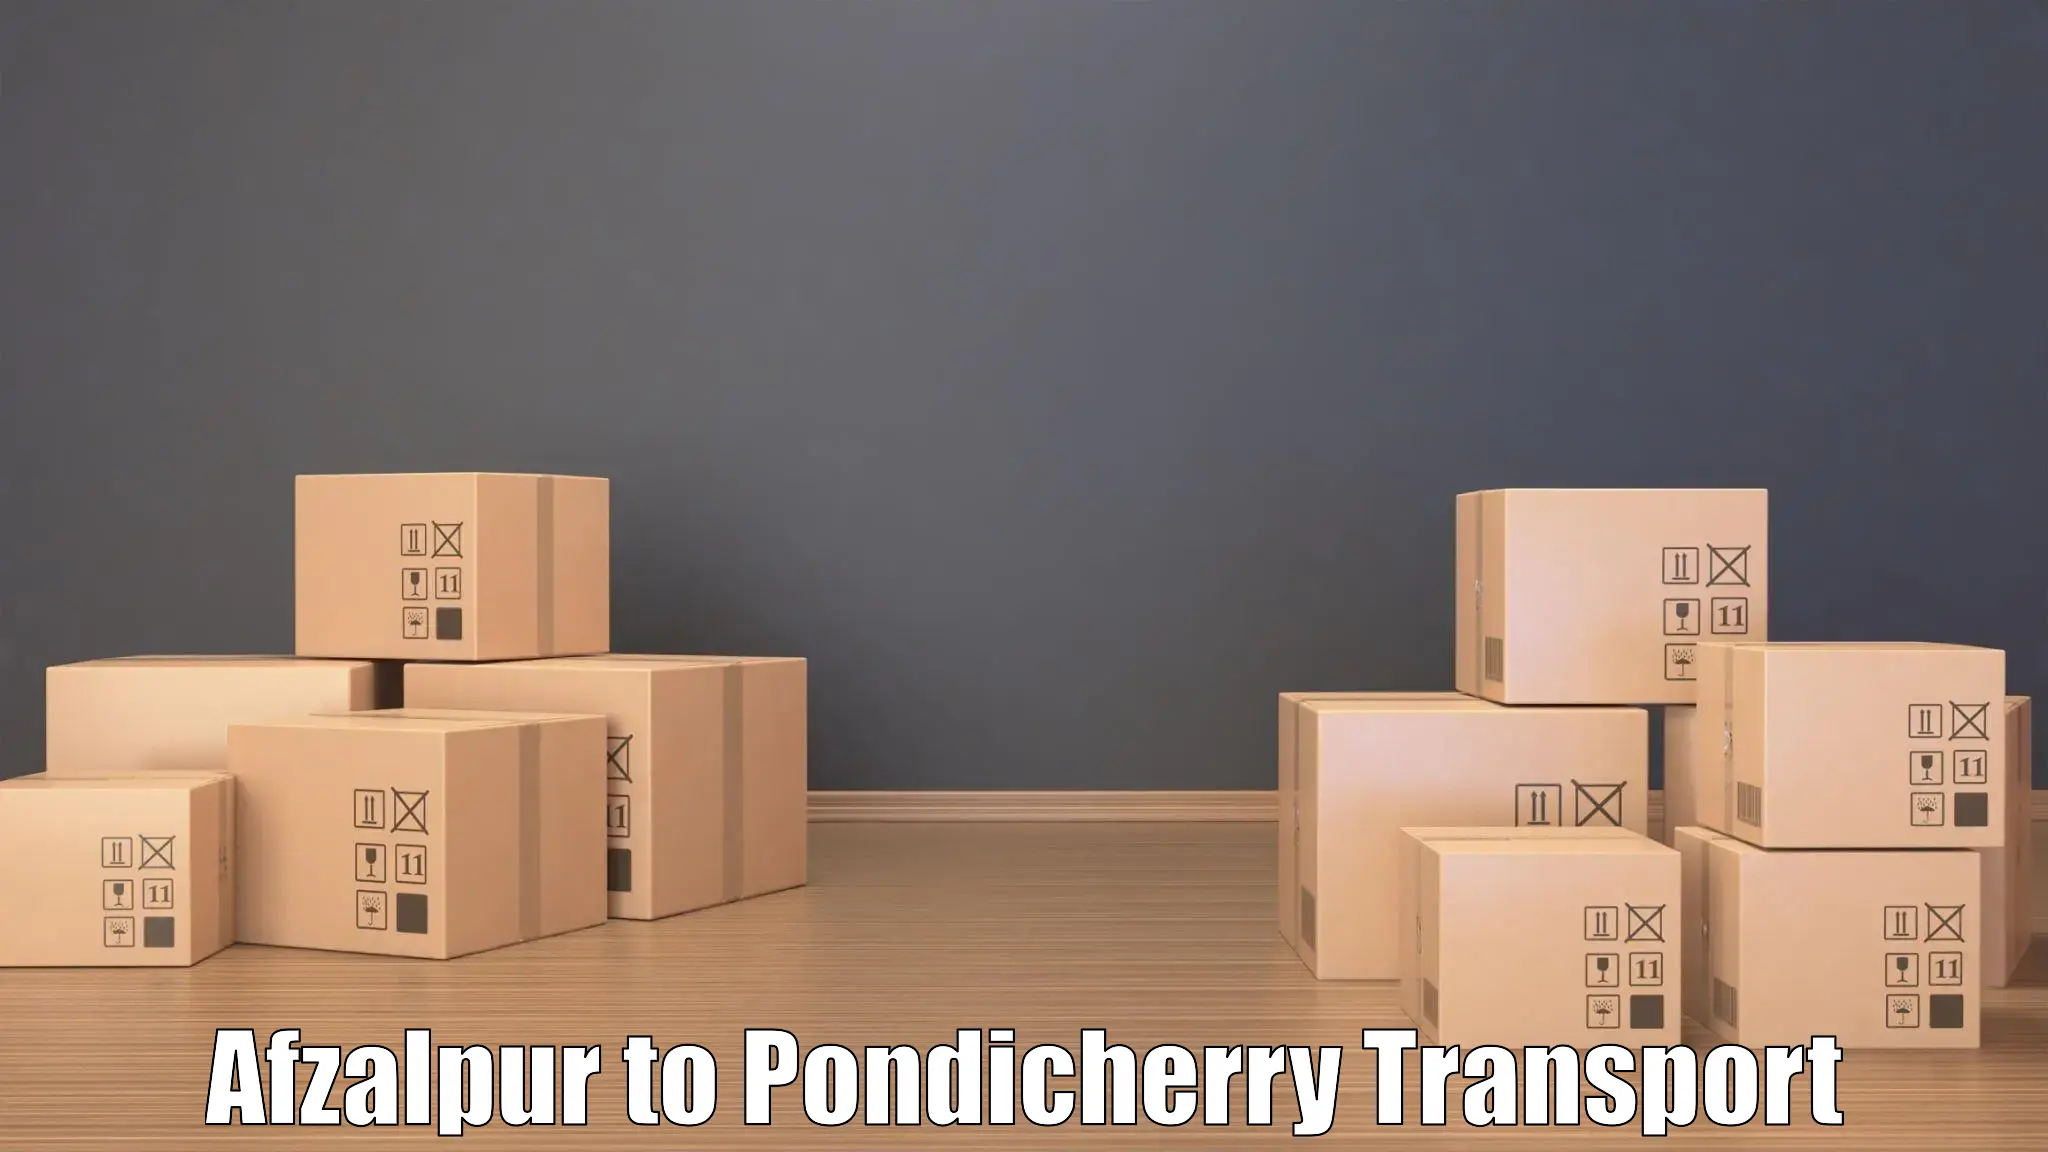 Road transport online services Afzalpur to Pondicherry